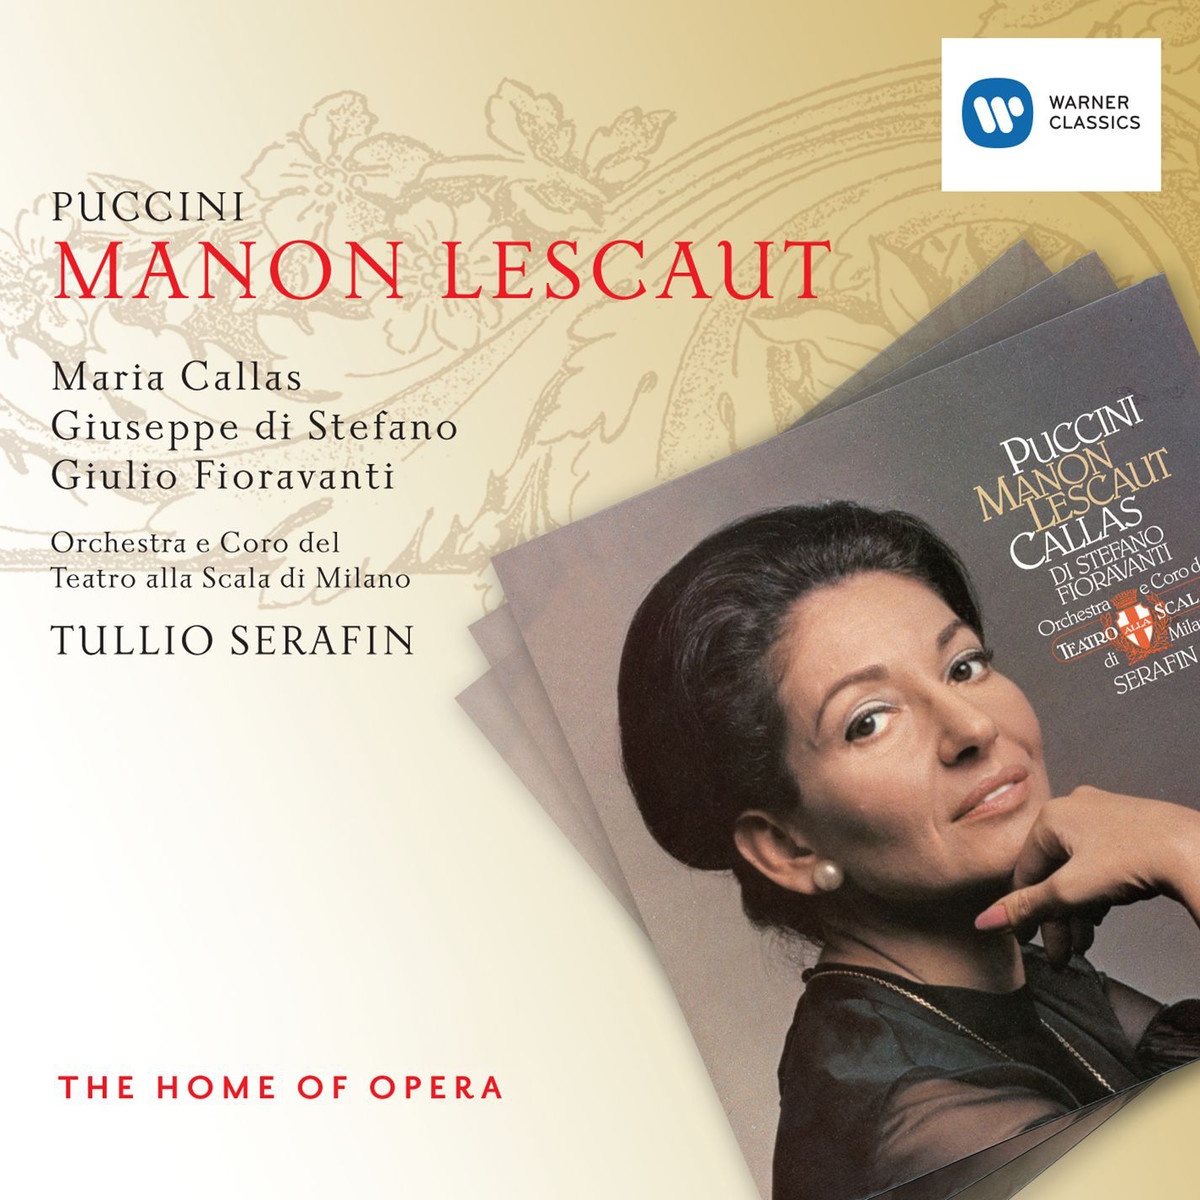 Manon Lescaut, ATTO TERZO/ACT 3/DRITTER AKT/TROISIÈME ACTE: Manon! ... Des Grieux! (Des Grieux/Manon/Un Lampionaio)